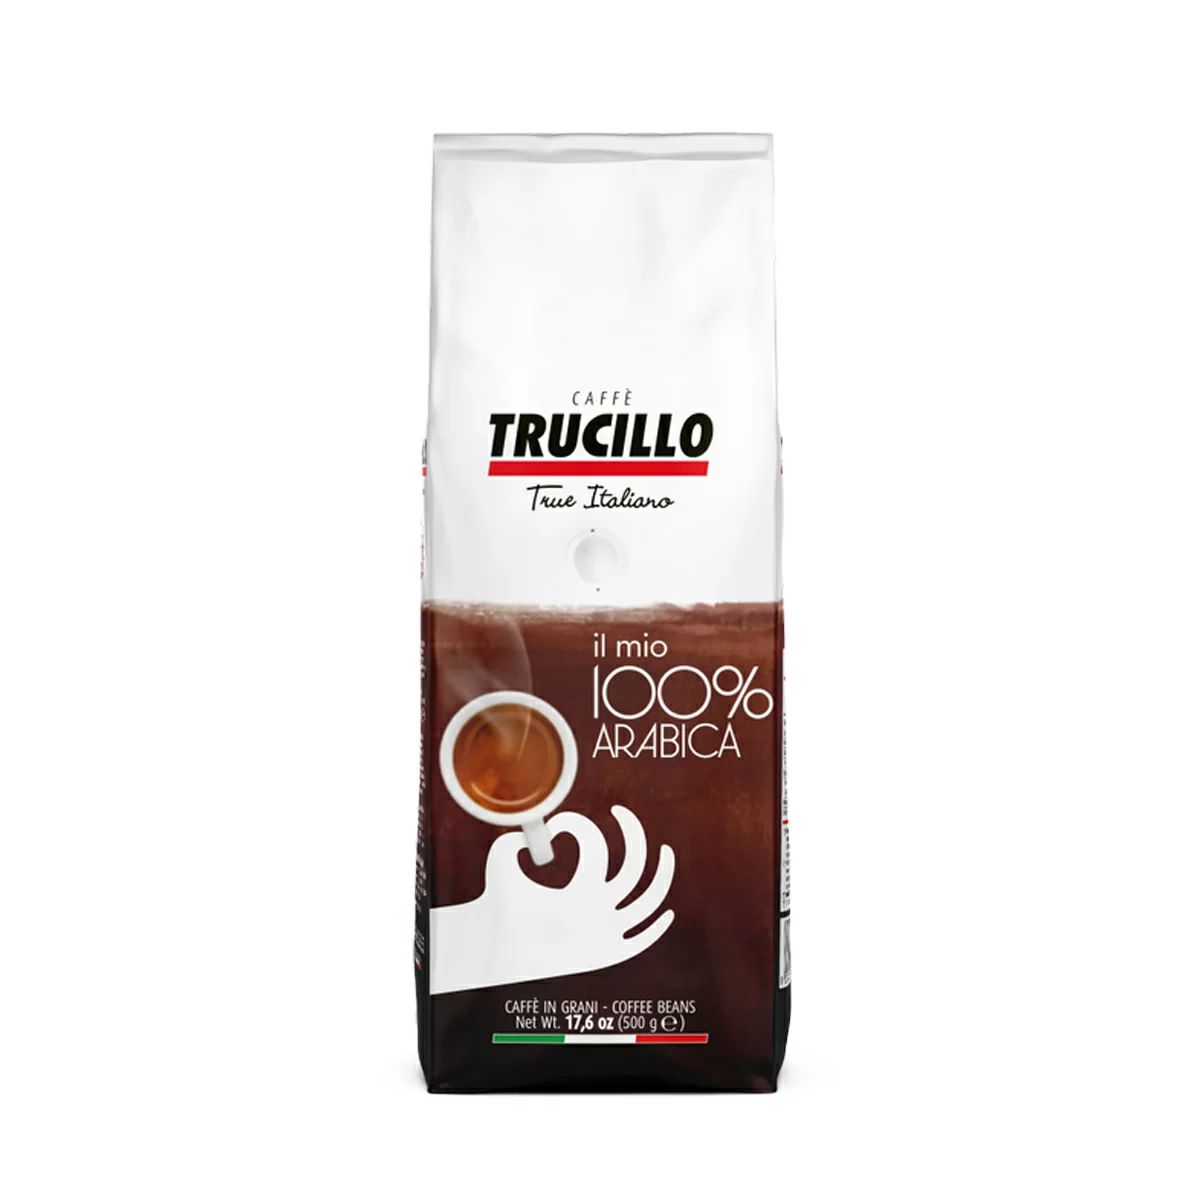 Caffè Trucillo Il Mio 100 arabica koffiebonen 500 gram